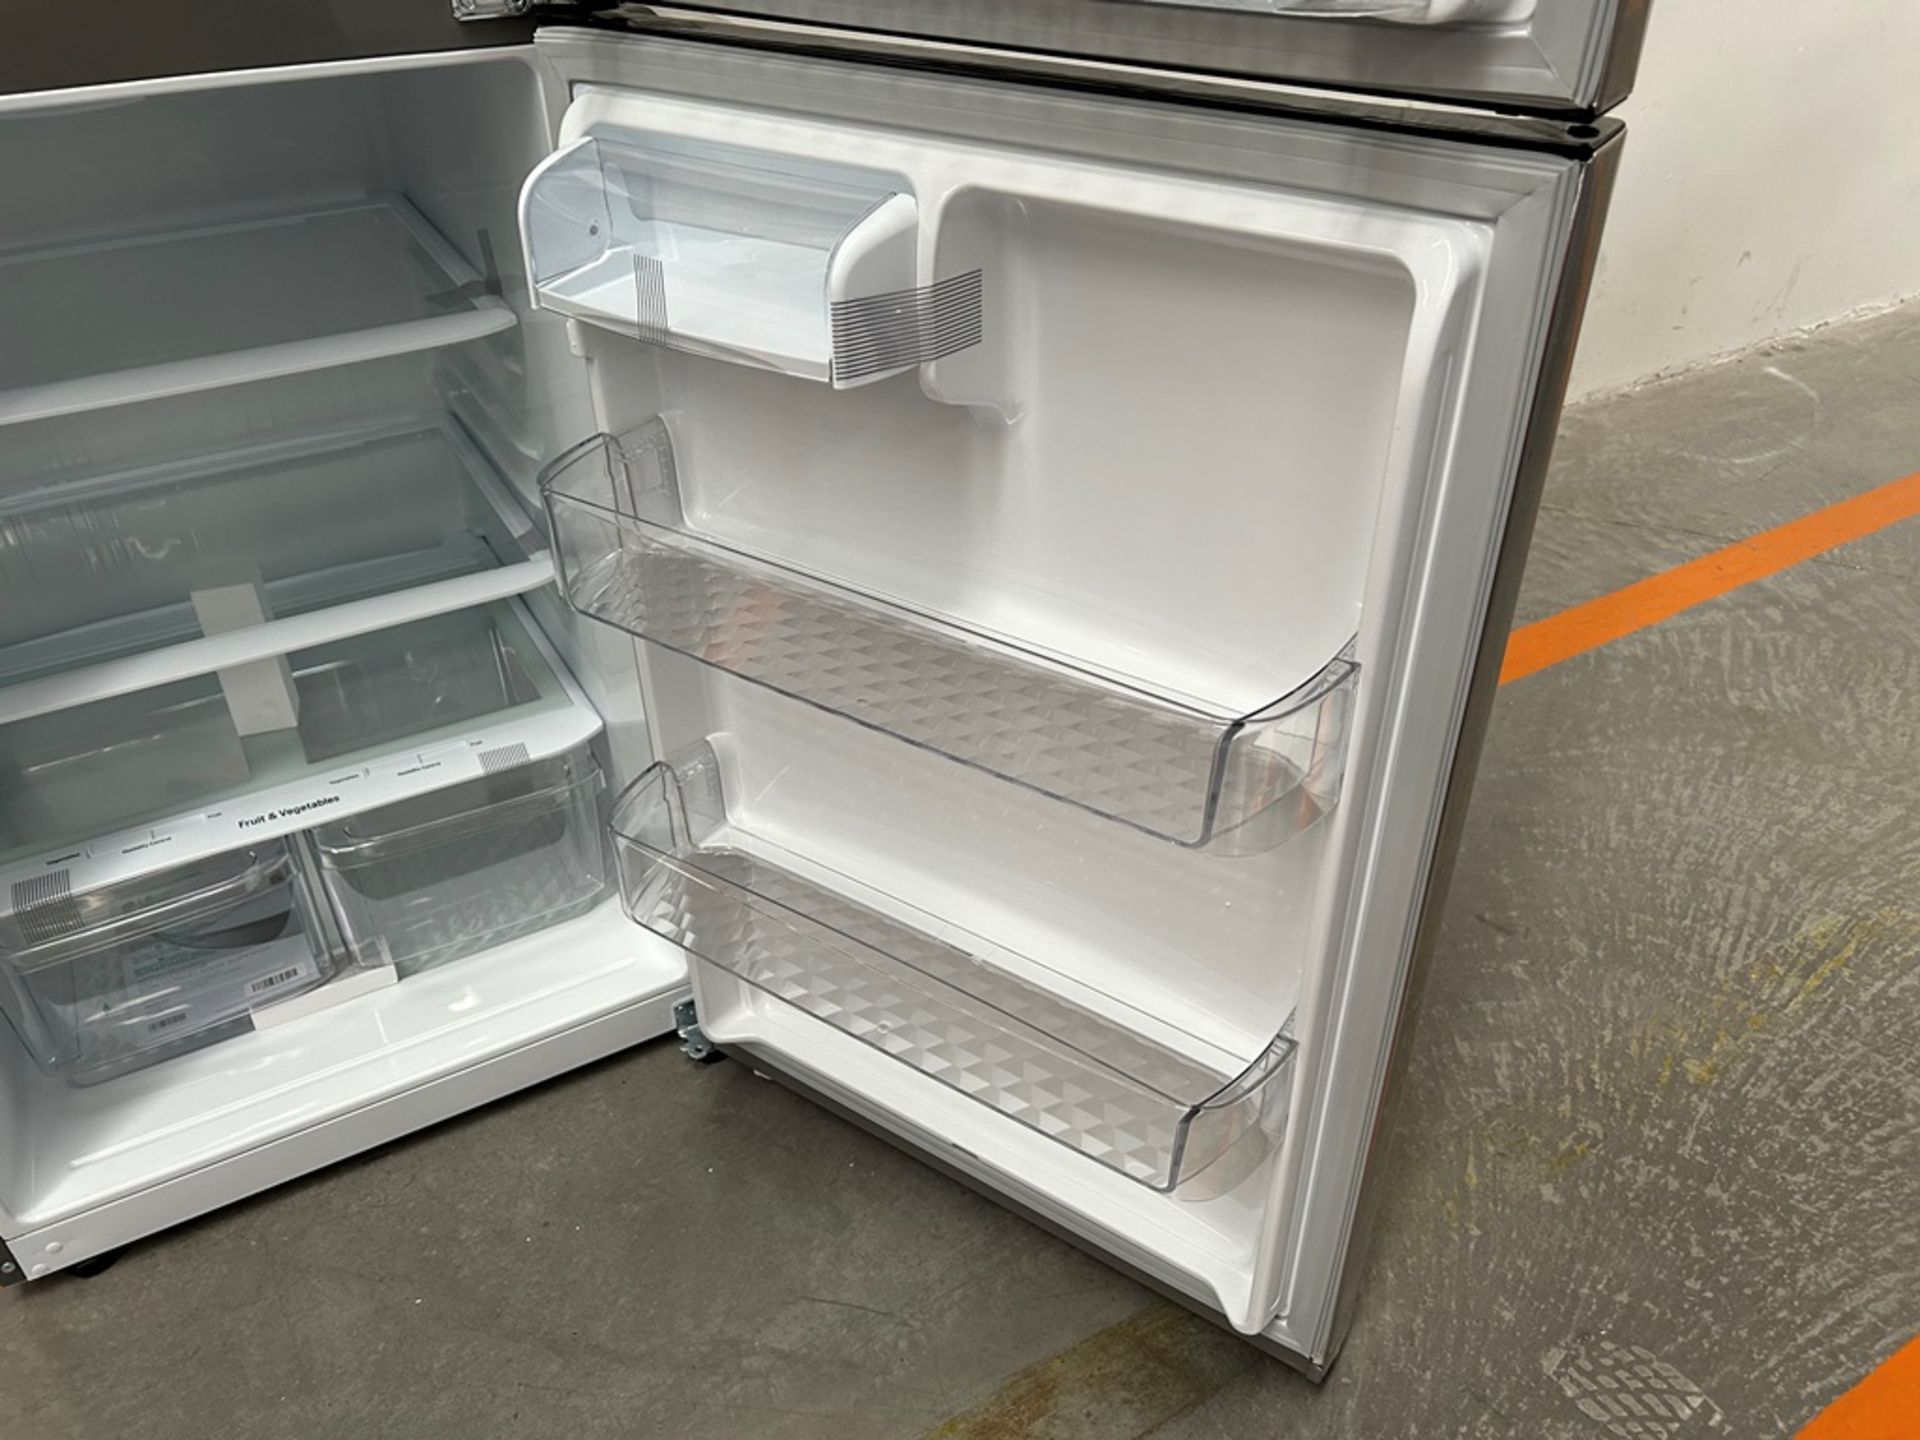 (NUEVO) Refrigerador Marca LG, Modelo LT57BPSX, Serie 29679, Color GRIS - Image 8 of 11